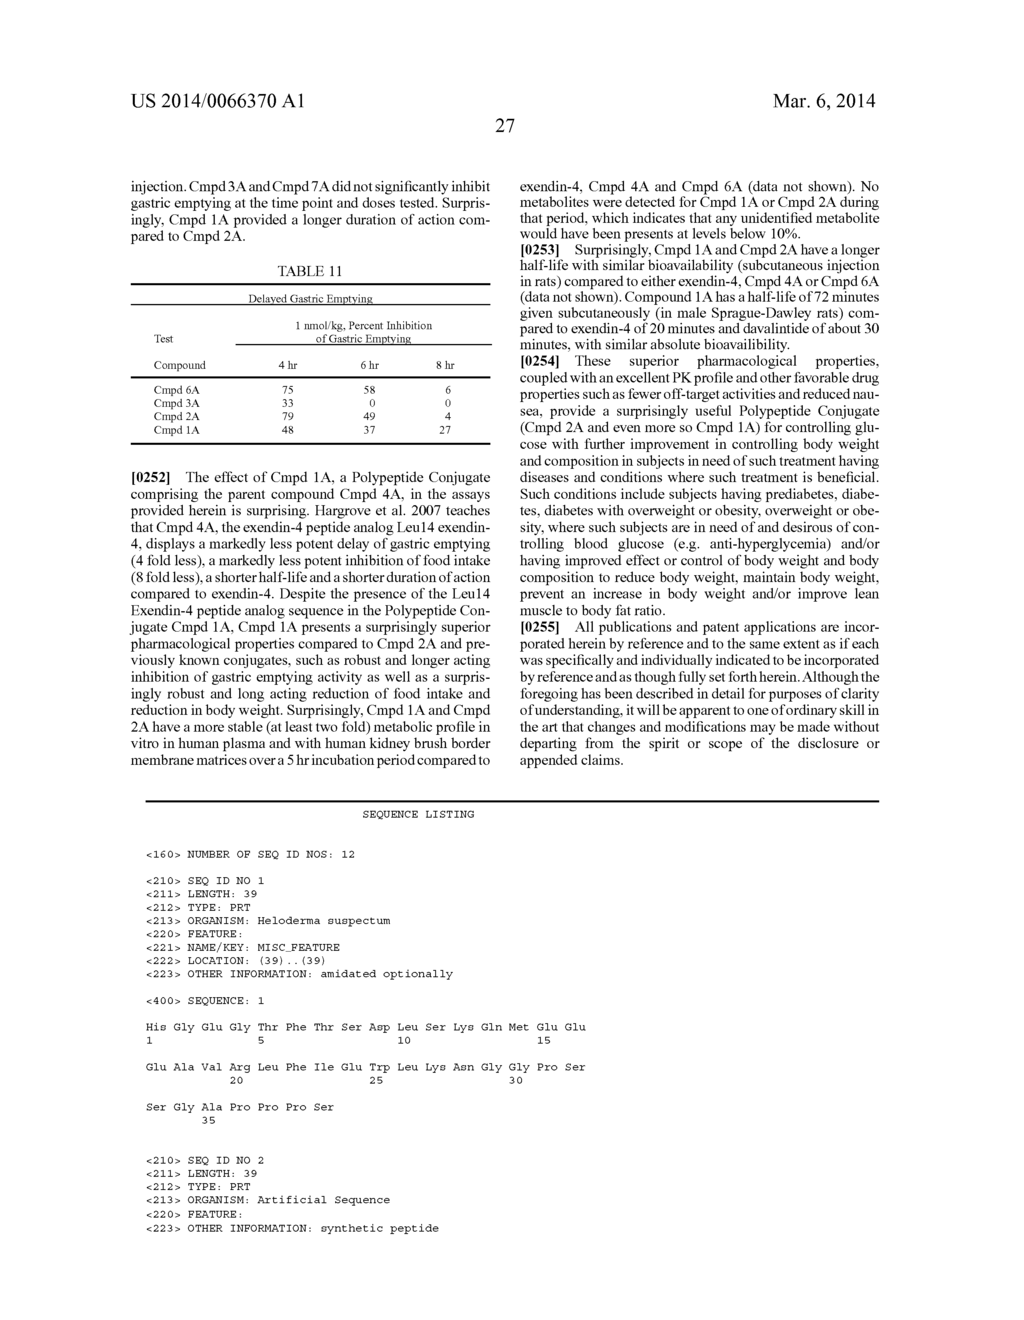 Polypeptide Conjugate - diagram, schematic, and image 37